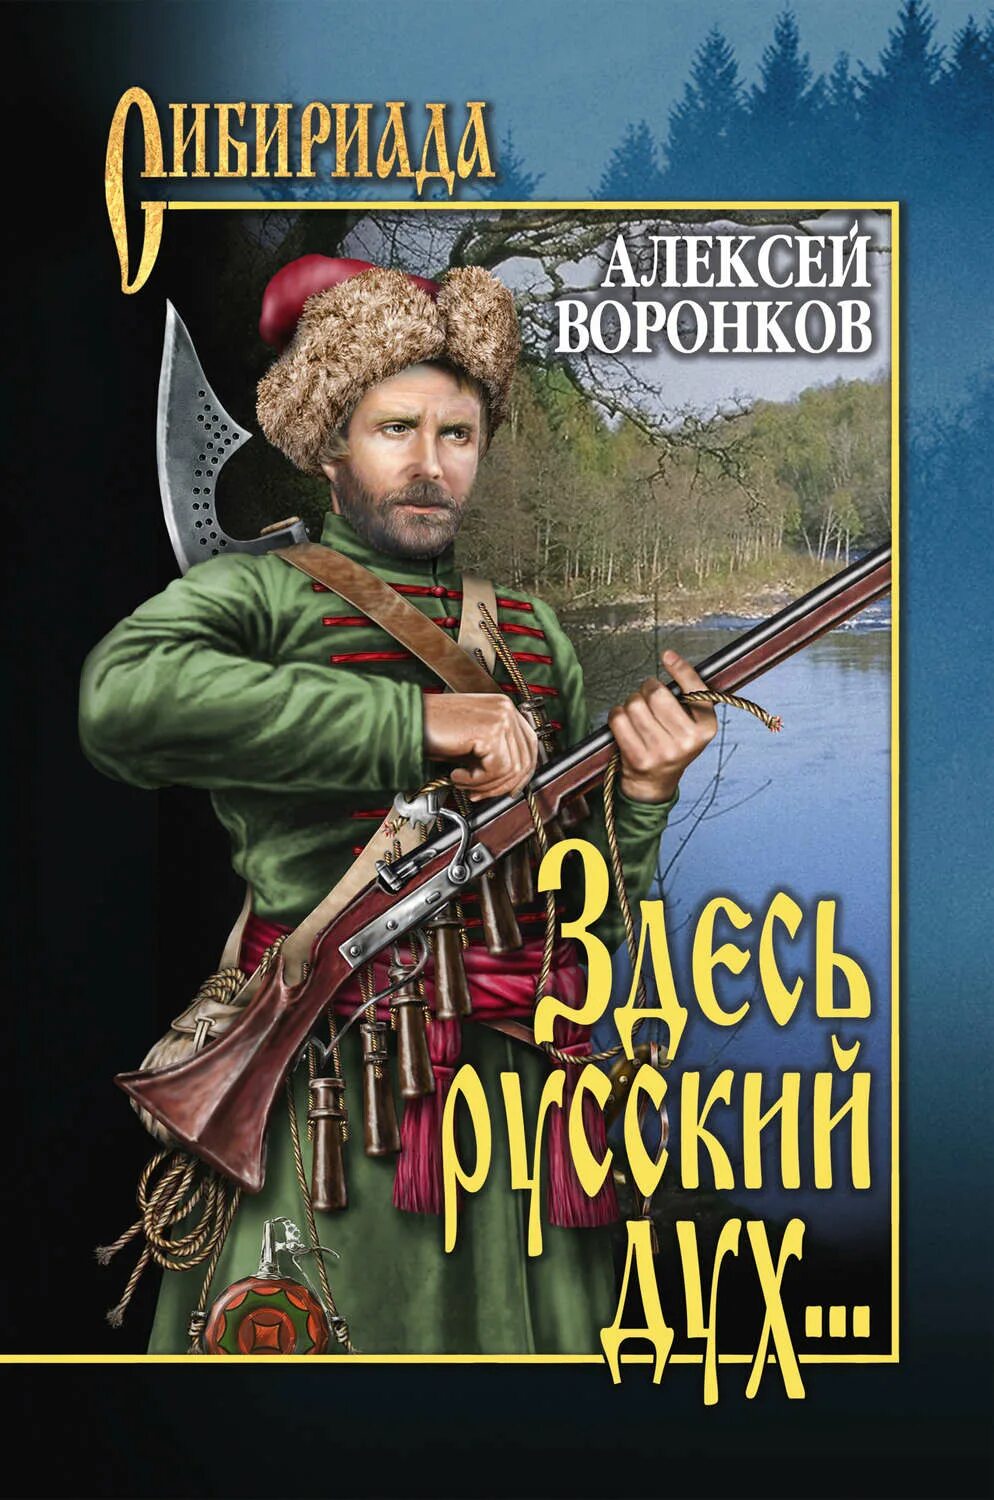 Сибириада автор. Художественные исторические книги. Здесь русский дух книга.